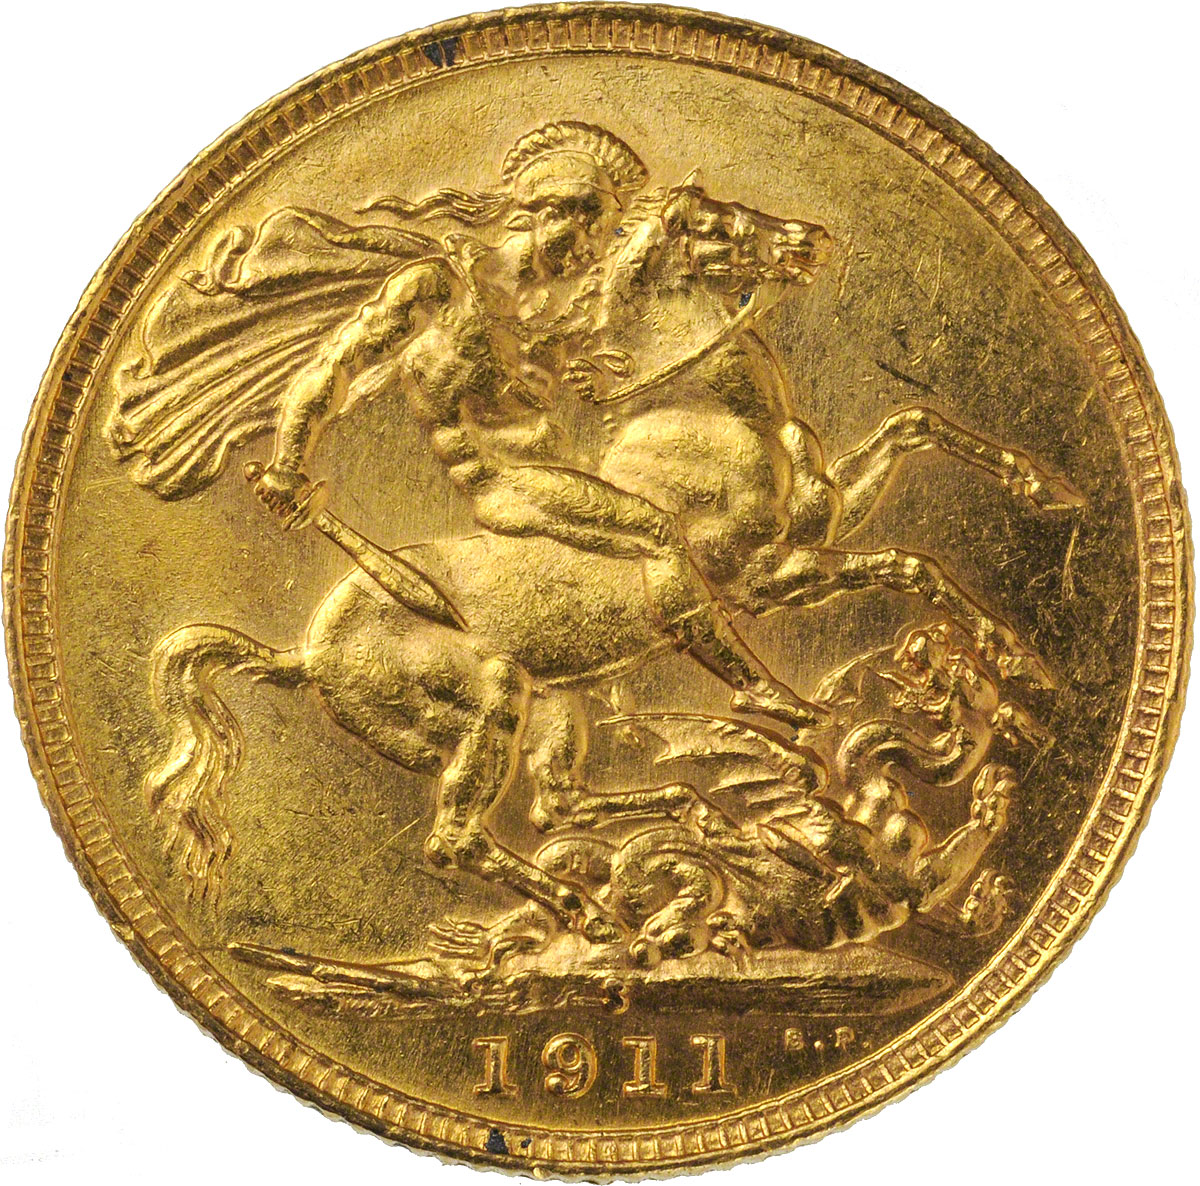 1911 Γεώργιος Ε’ (Νομισματοκοπείο Σίδνεϊ)